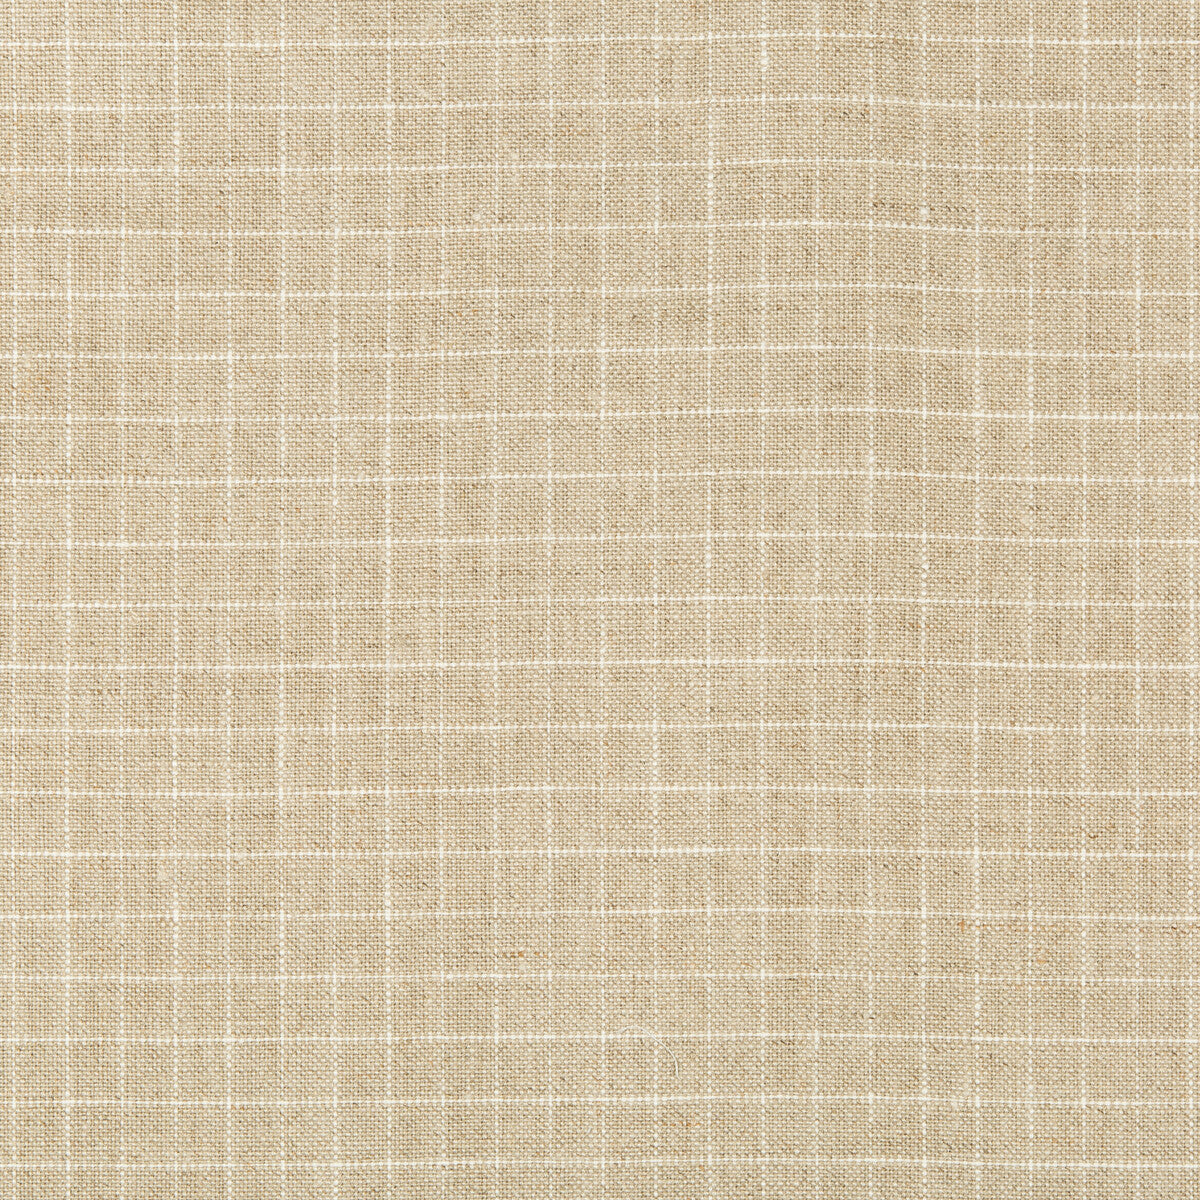 Kravet Basics fabric in 35531-16 color - pattern 35531.16.0 - by Kravet Basics